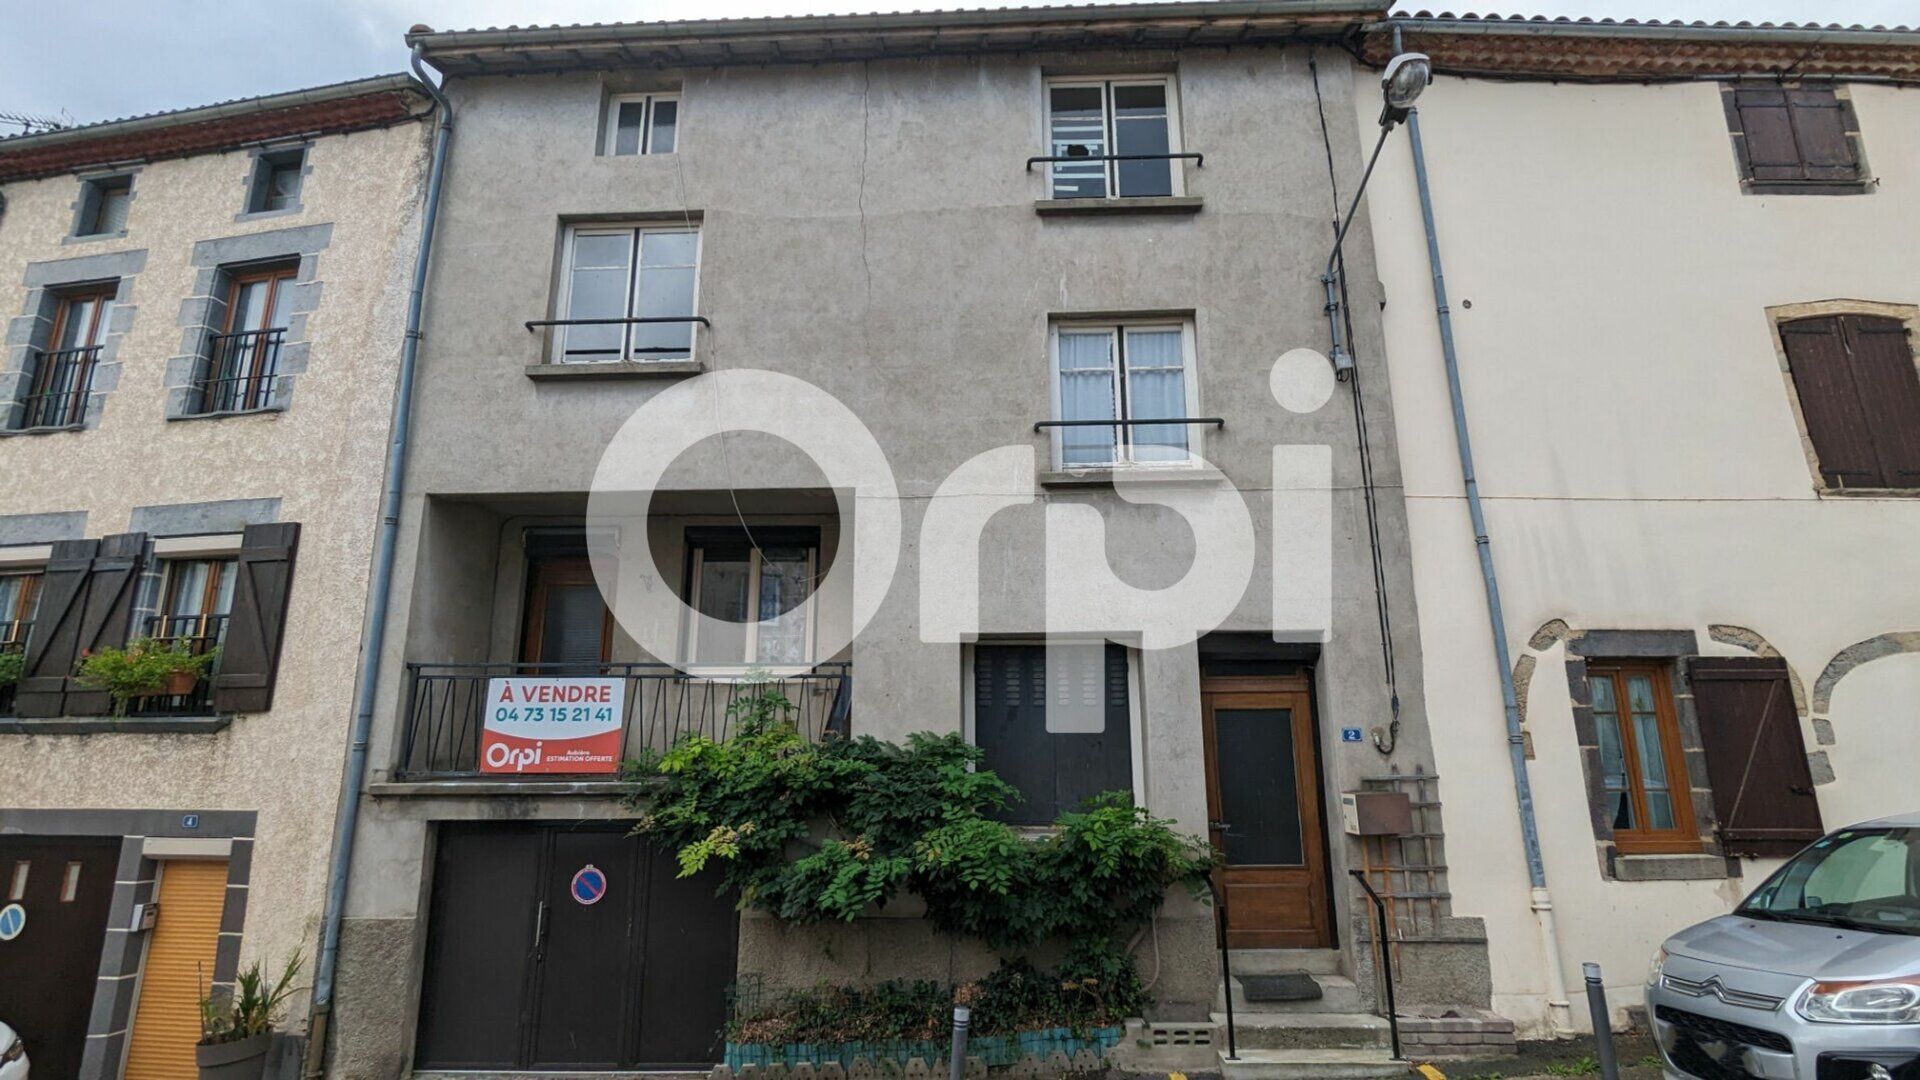 Maison à vendre 5 125m2 à Saint-Amant-Tallende vignette-1